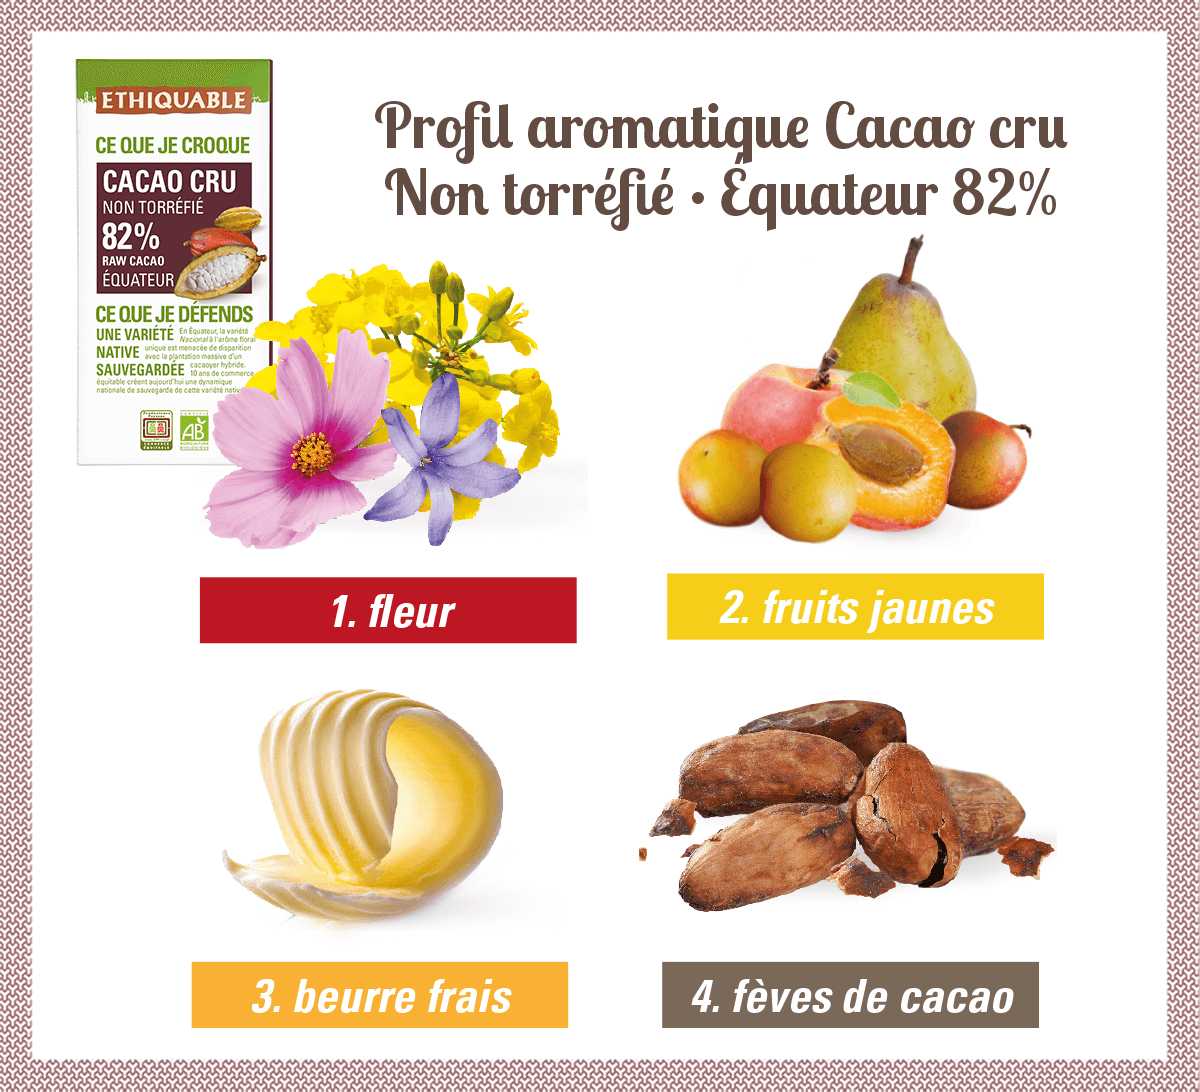 profil aromatique cacao cur 82% équateur